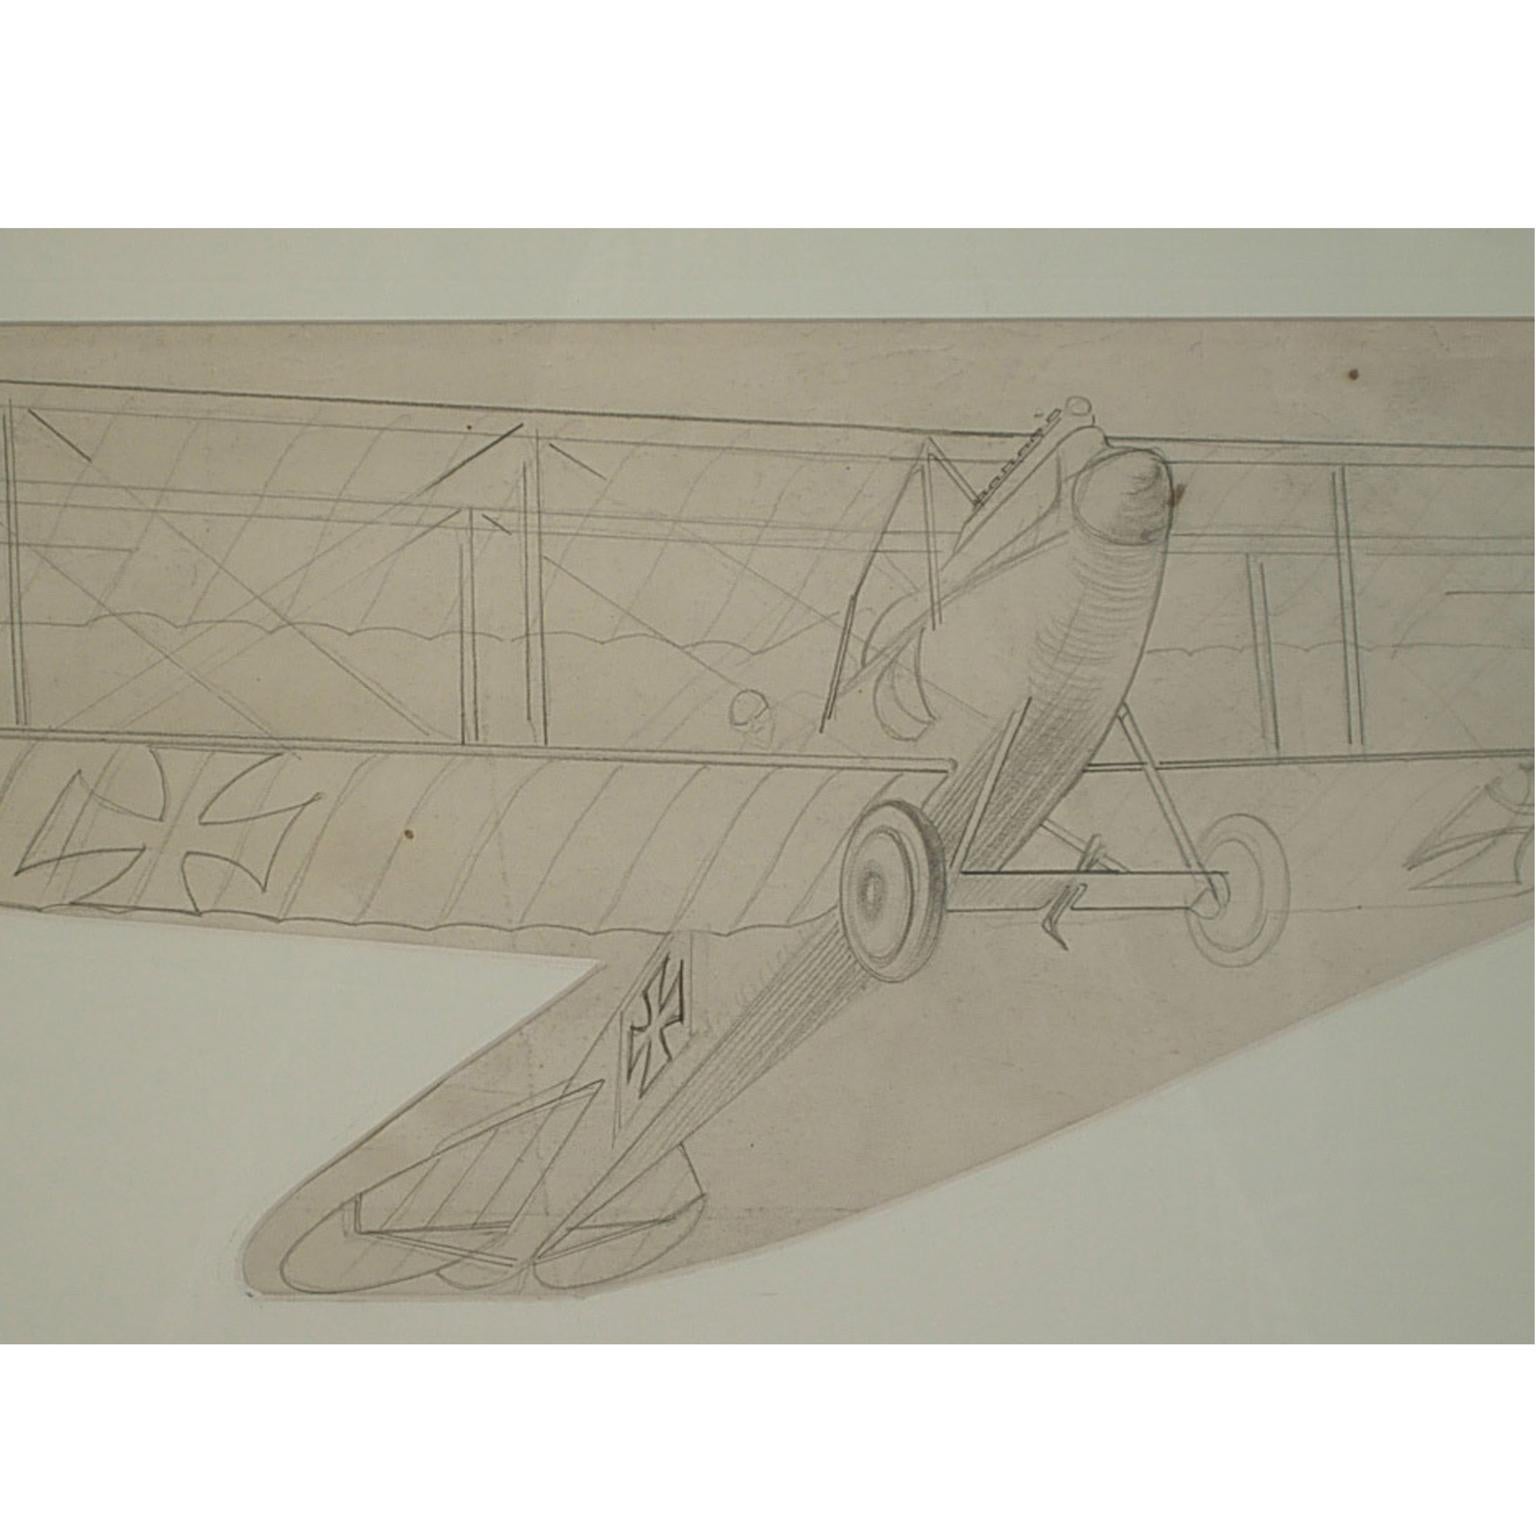 Dessin au crayon représentant un avion biplan biplace de reconnaissance Albatros C III produit en 1916, par Riccardo Cavigioli. Mesure avec cadre cm 53.5 x 31.4 - pouces 21 x 13.

Riccardo Cavigioli est né à Milan le 10 novembre 1895 et il est